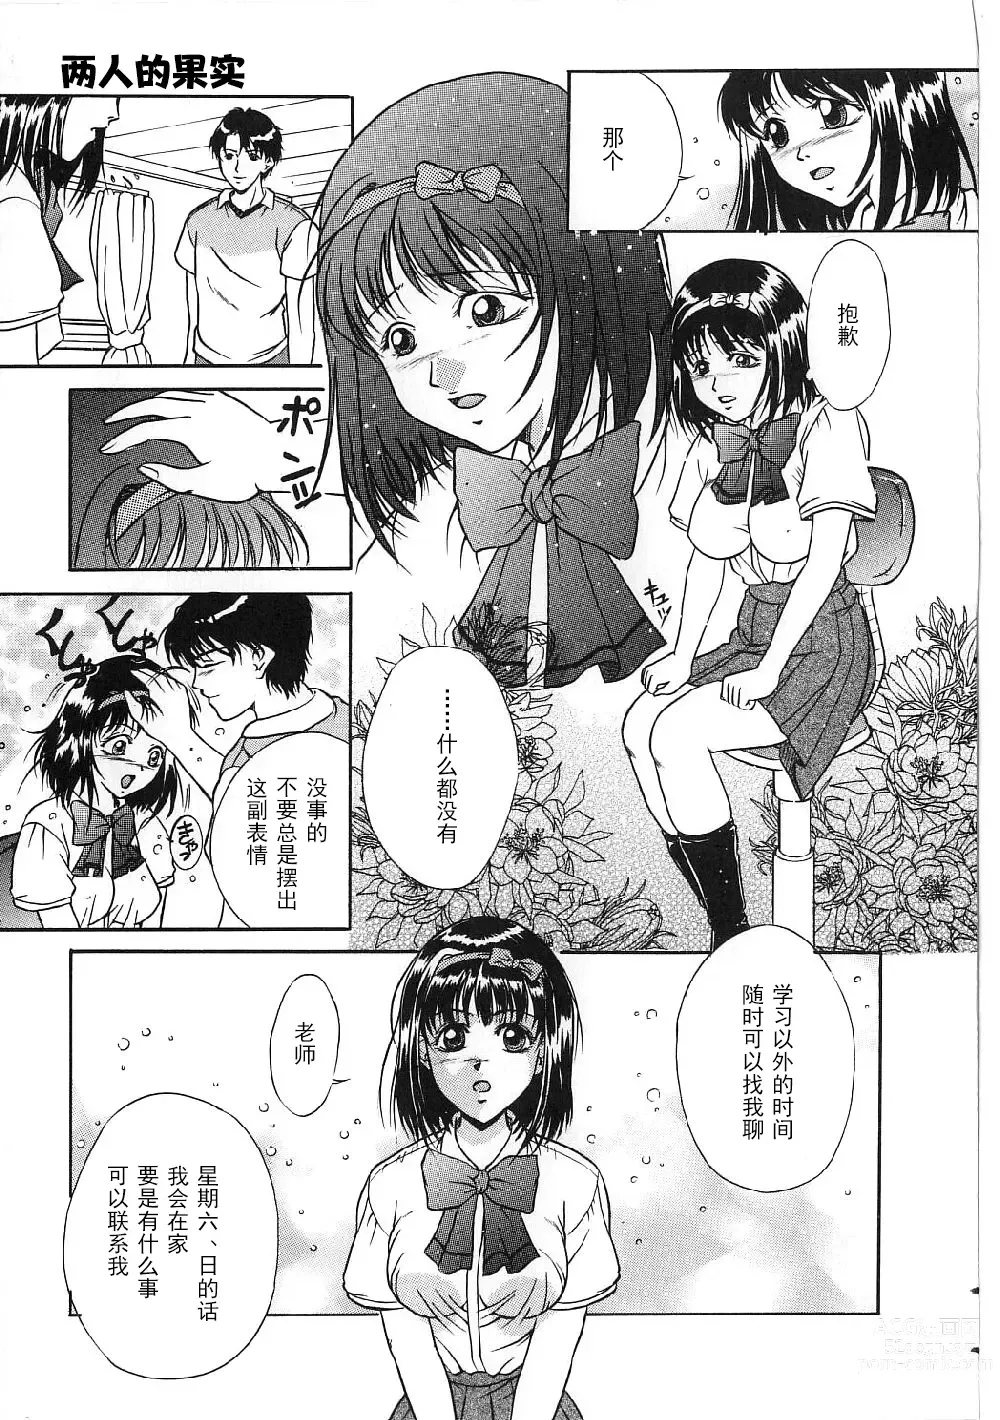 Page 7 of manga Kyonyuu Bondage